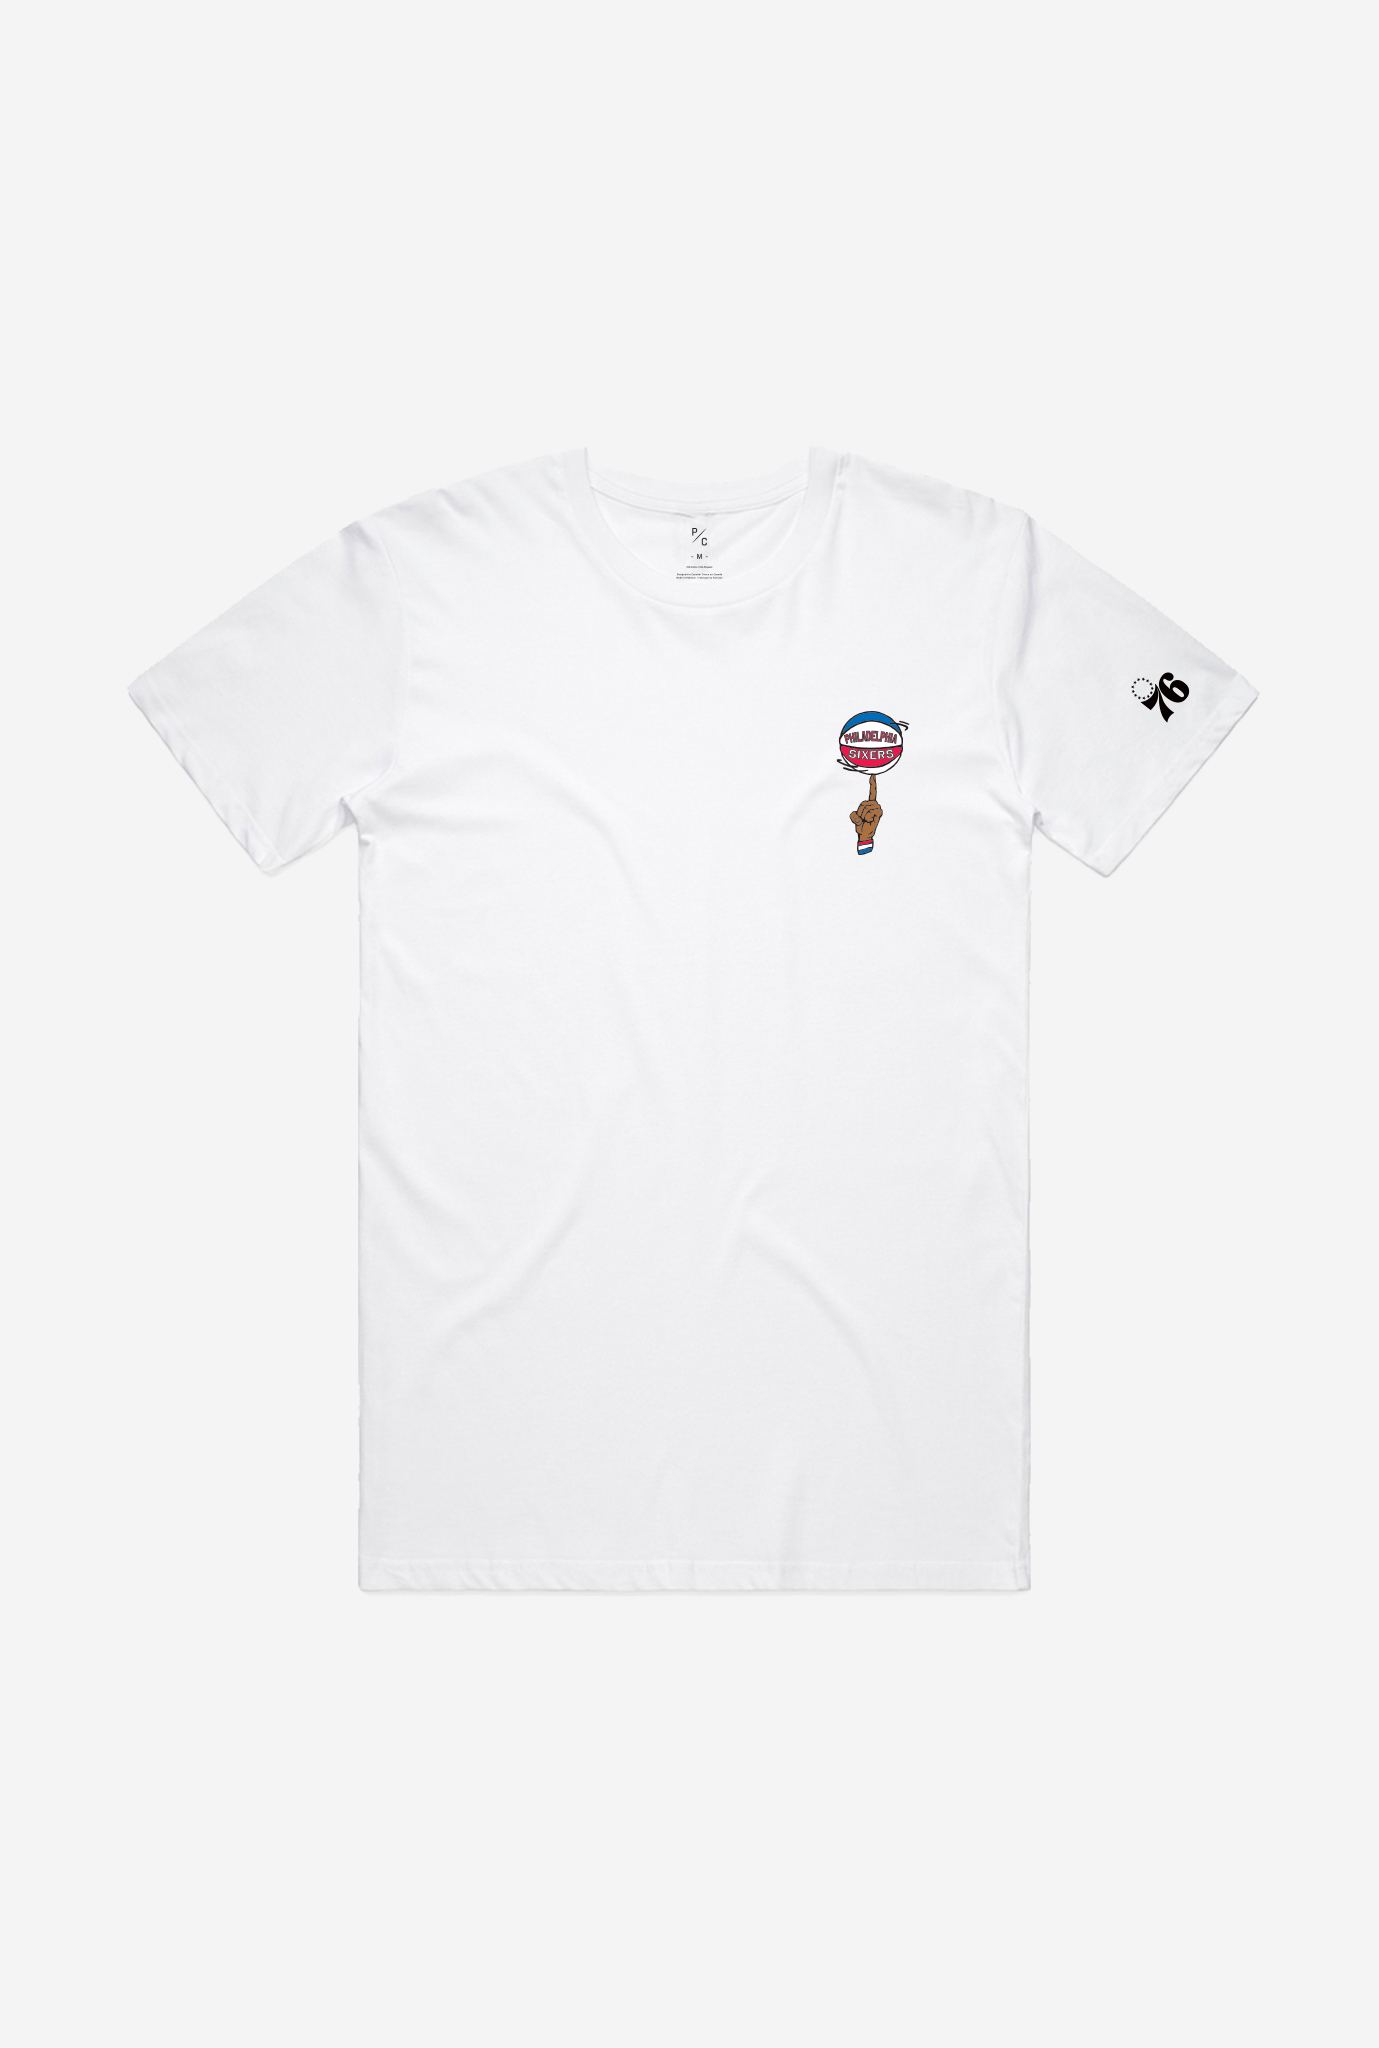 Philadelphia 76ers Spinning Ball Logo T-Shirt - White